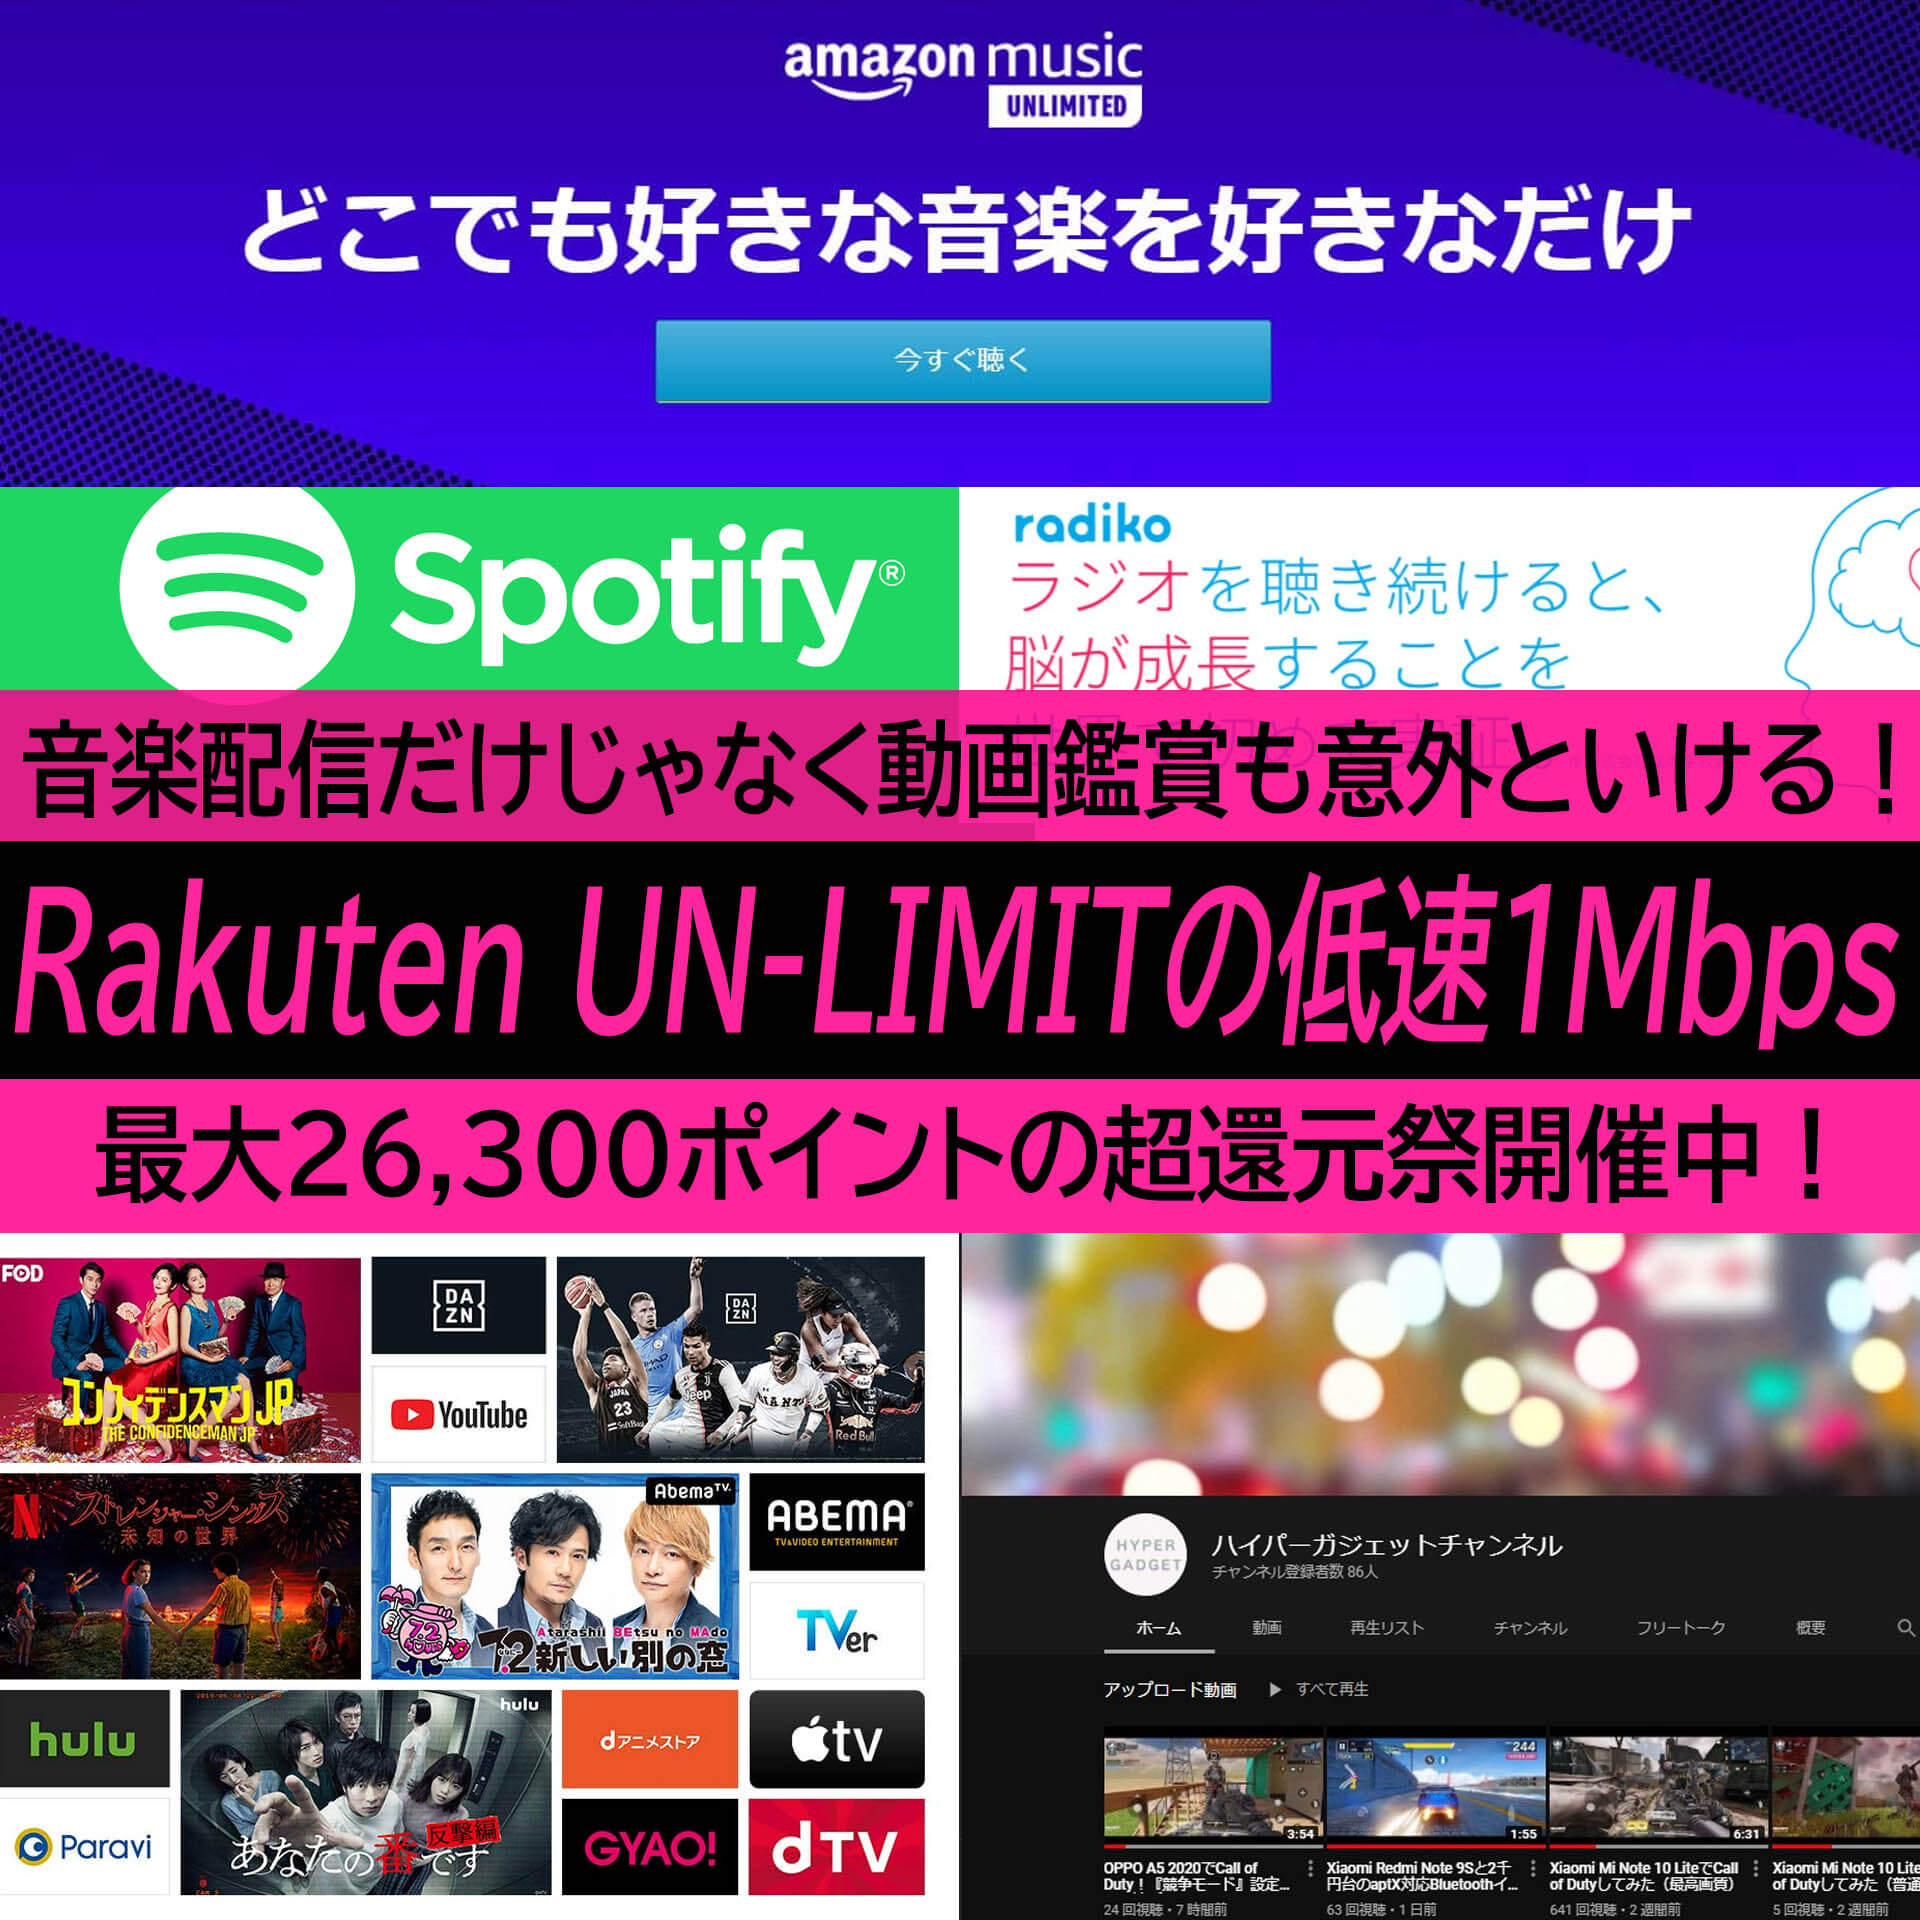 Rakuten Un Limit の低速 1mbps で快適に使えるサービスはコレだ 音楽は勿論 動画も意外といける